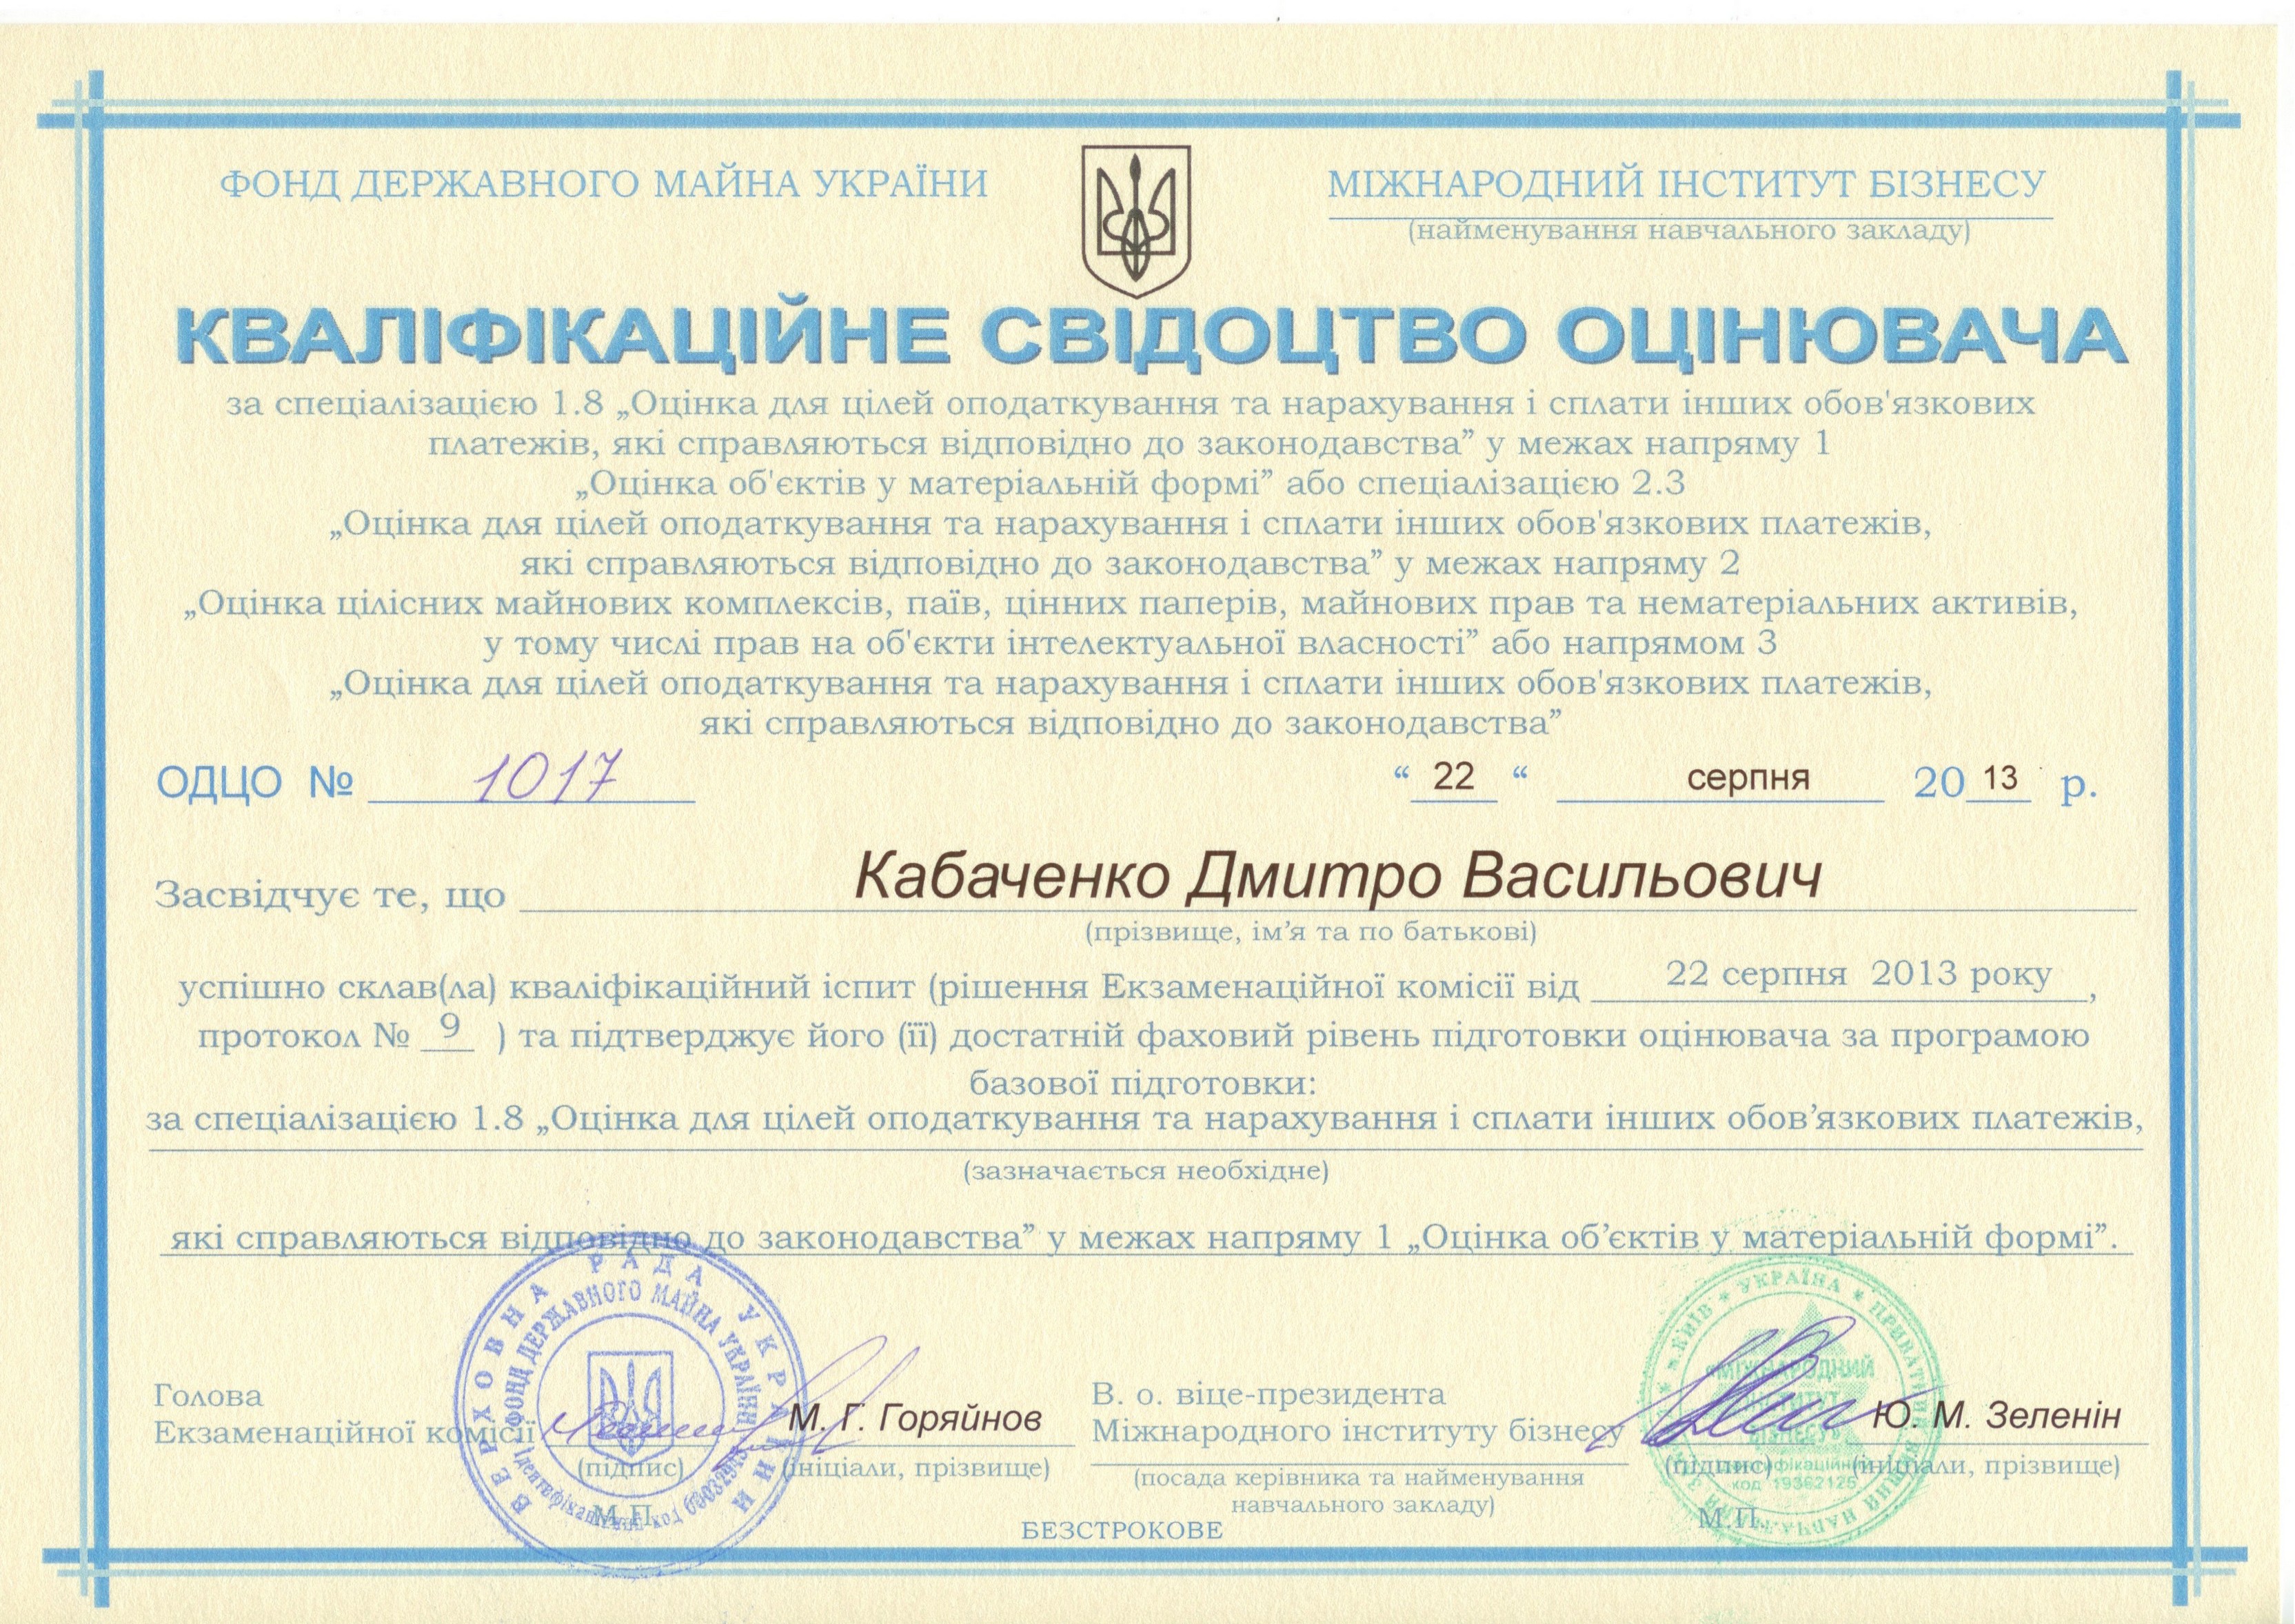 Кваліфікаційне свідоцтво оцінювача ОДЦО № 1017 від 22.08.2013 р.